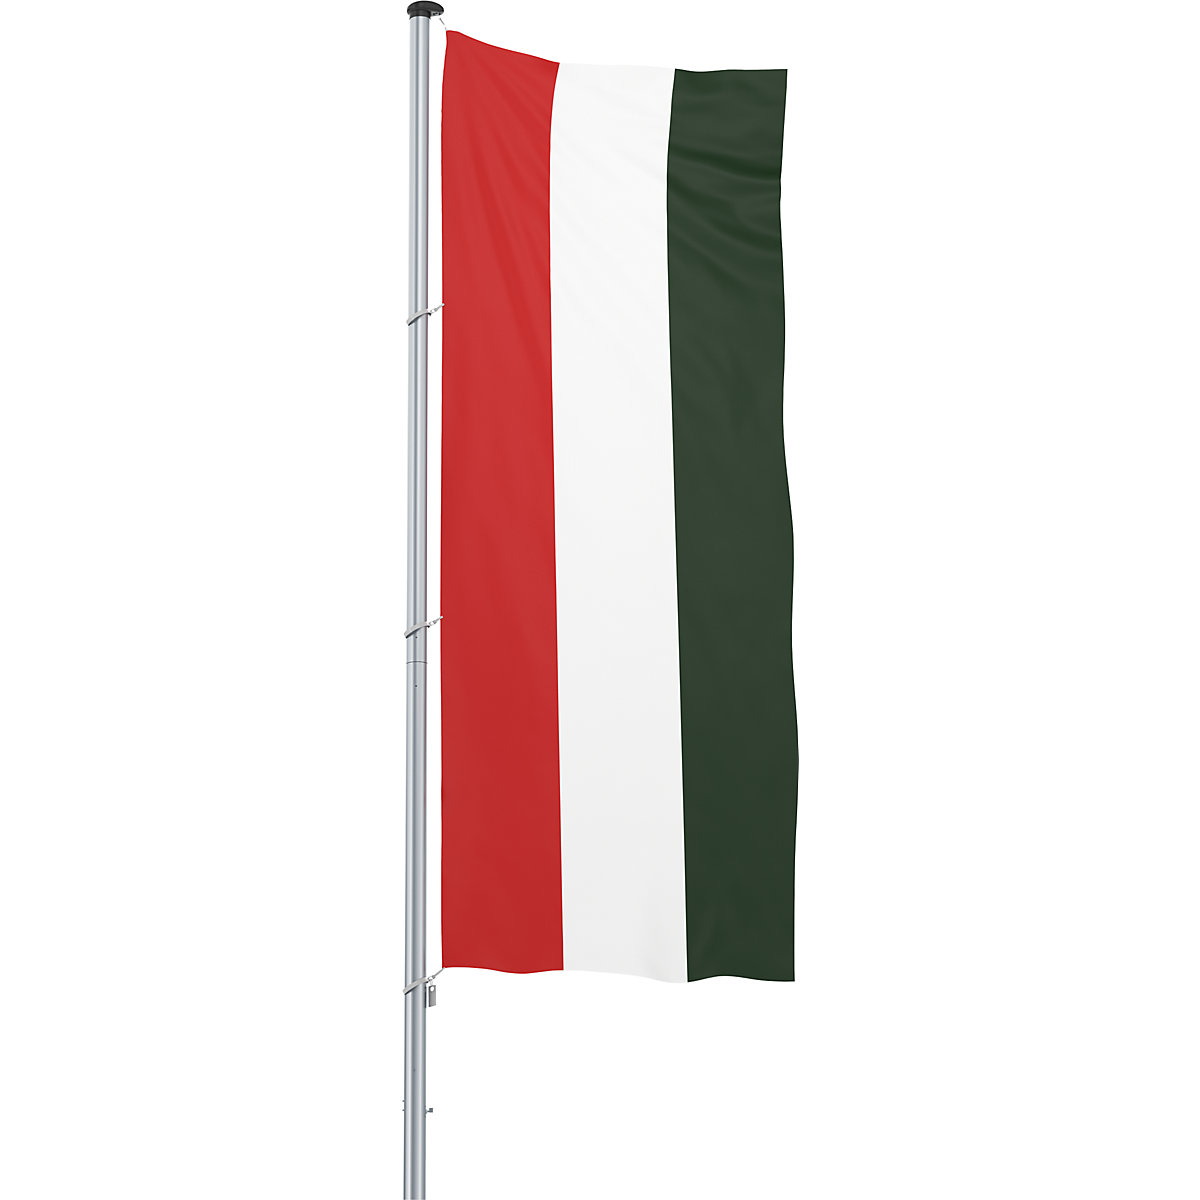 Mannus – Bandera para izar/bandera del país, formato 1,2 x 3 m, Hungría